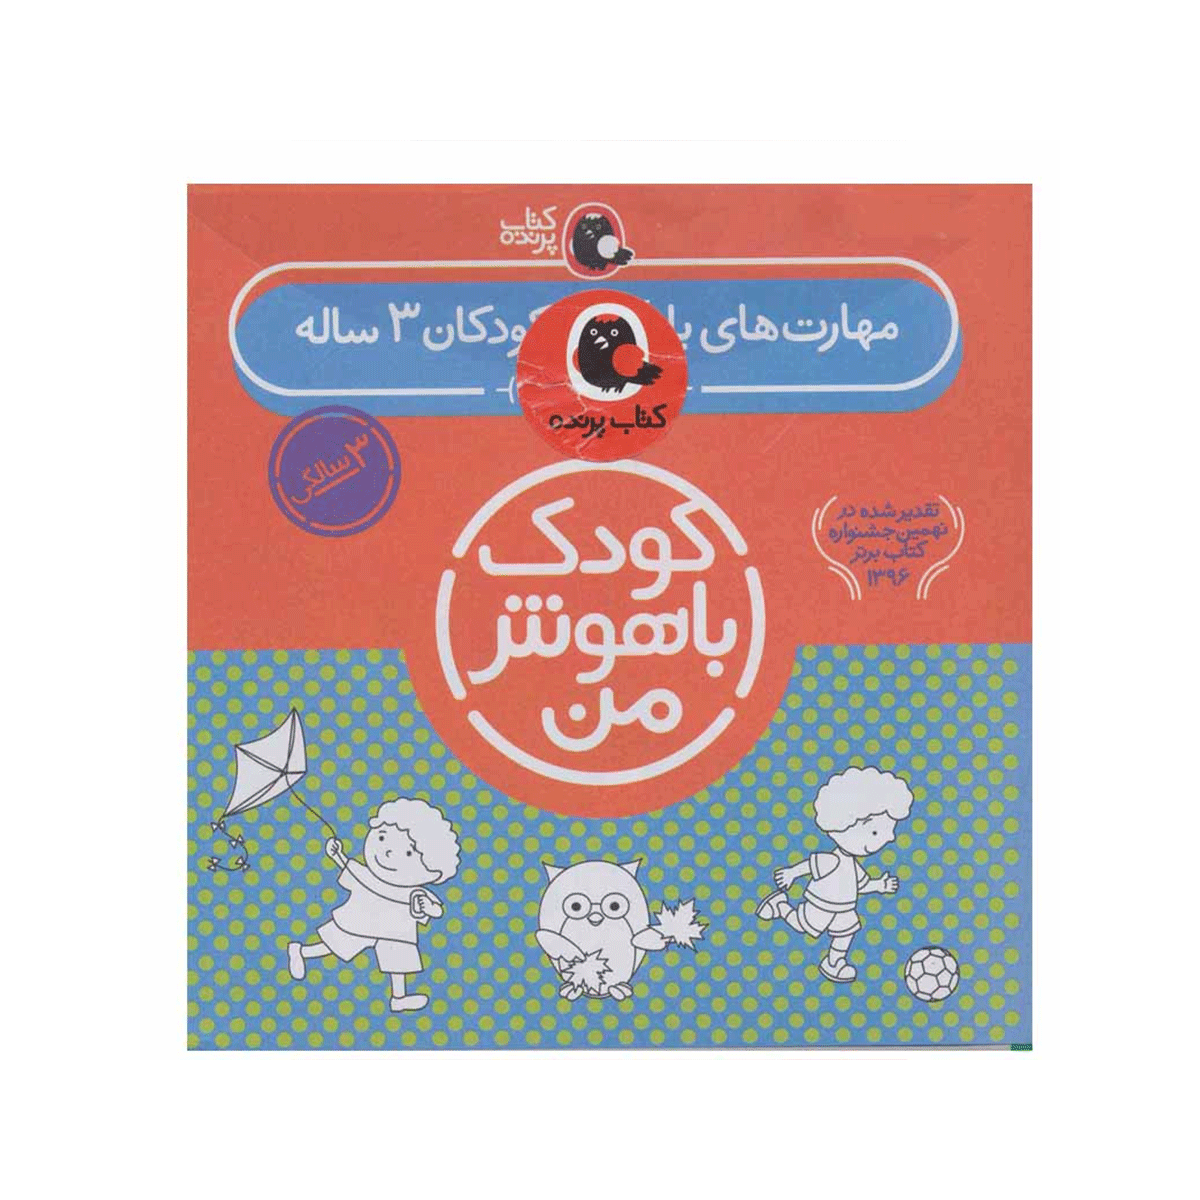 [13985] کتاب مجموعه کودک باهوش من (مهارت های یادگیری کودکان) 3 ساله / کتاب پرنده